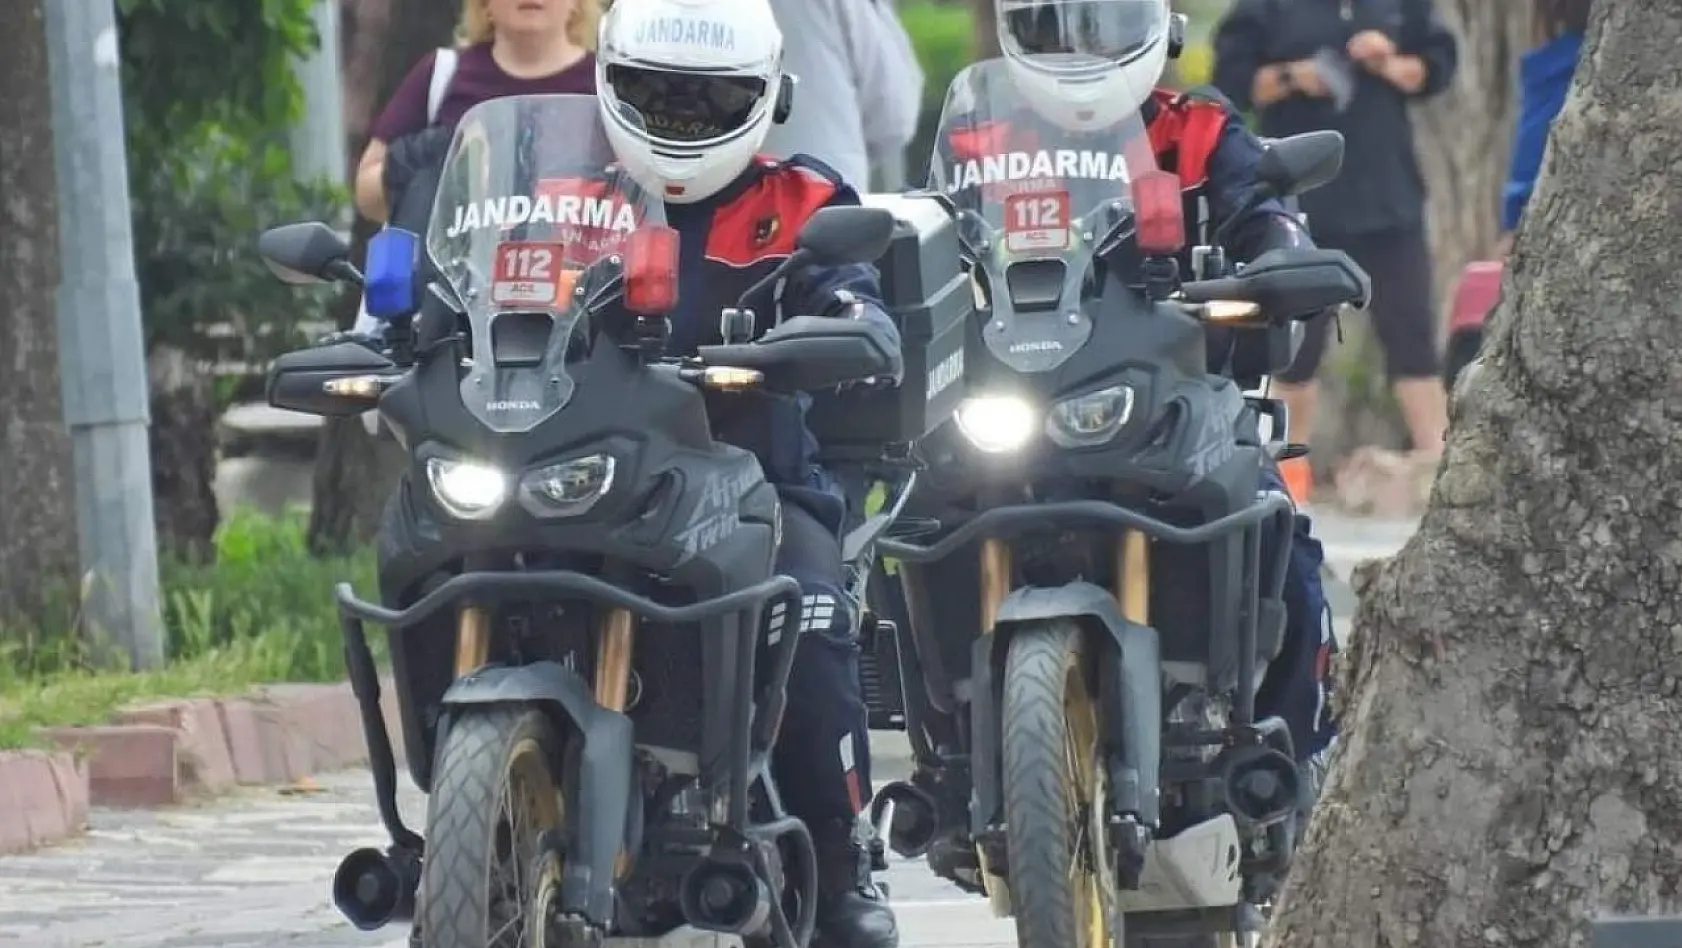 Motosikletli Jandarma timleri Kapıdağ'da görev başında